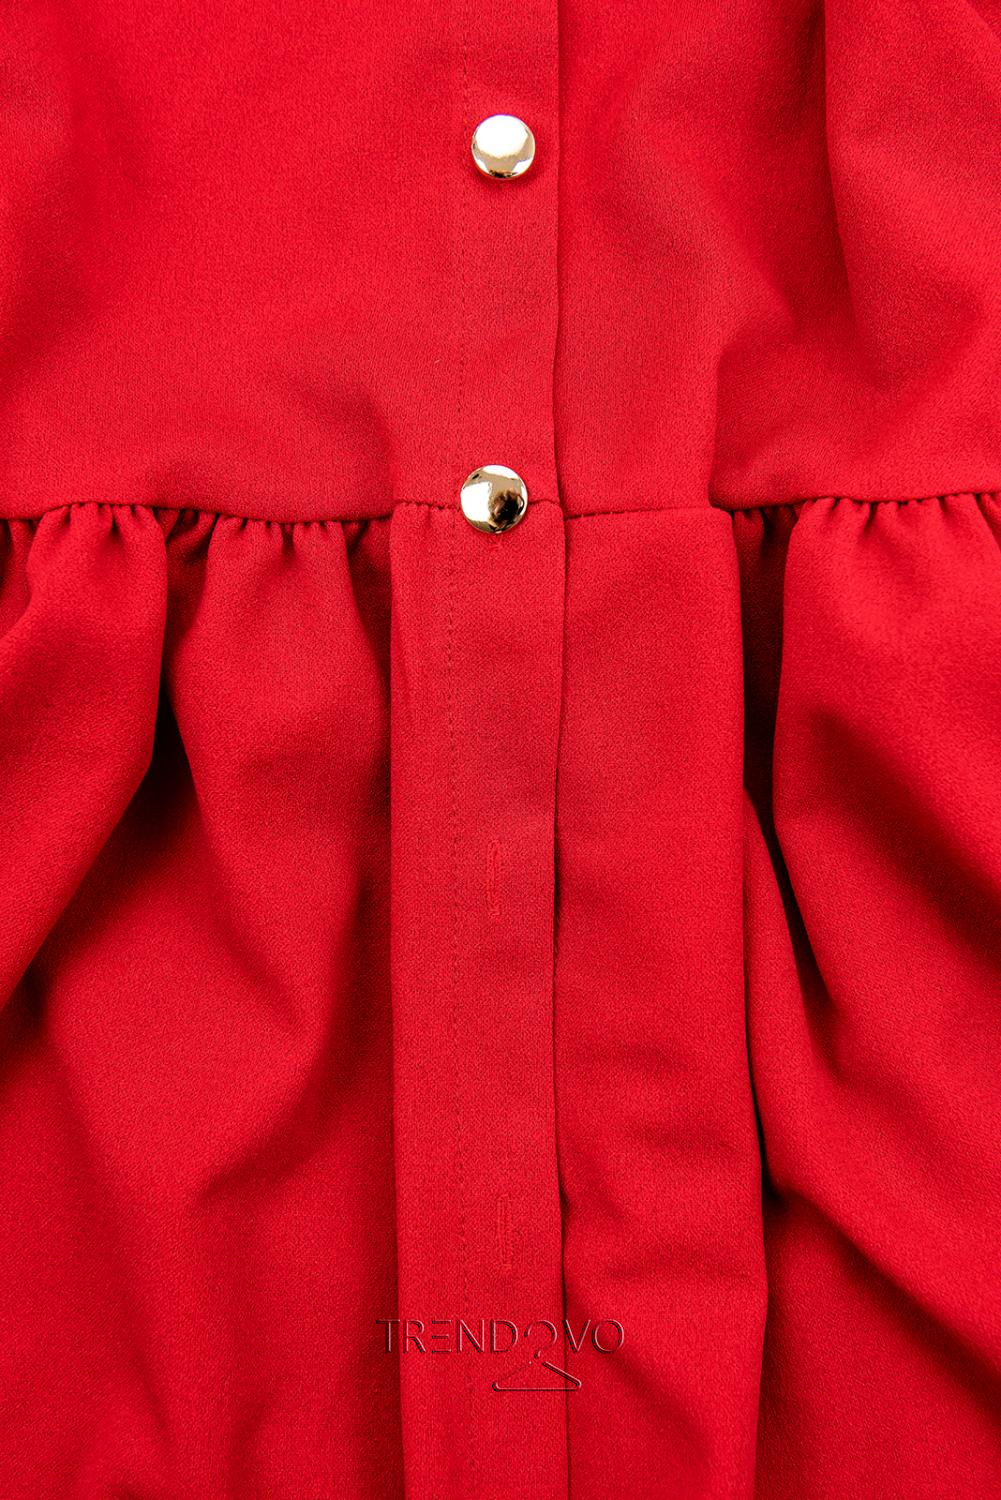 Červené šaty so zaväzovaním v páse